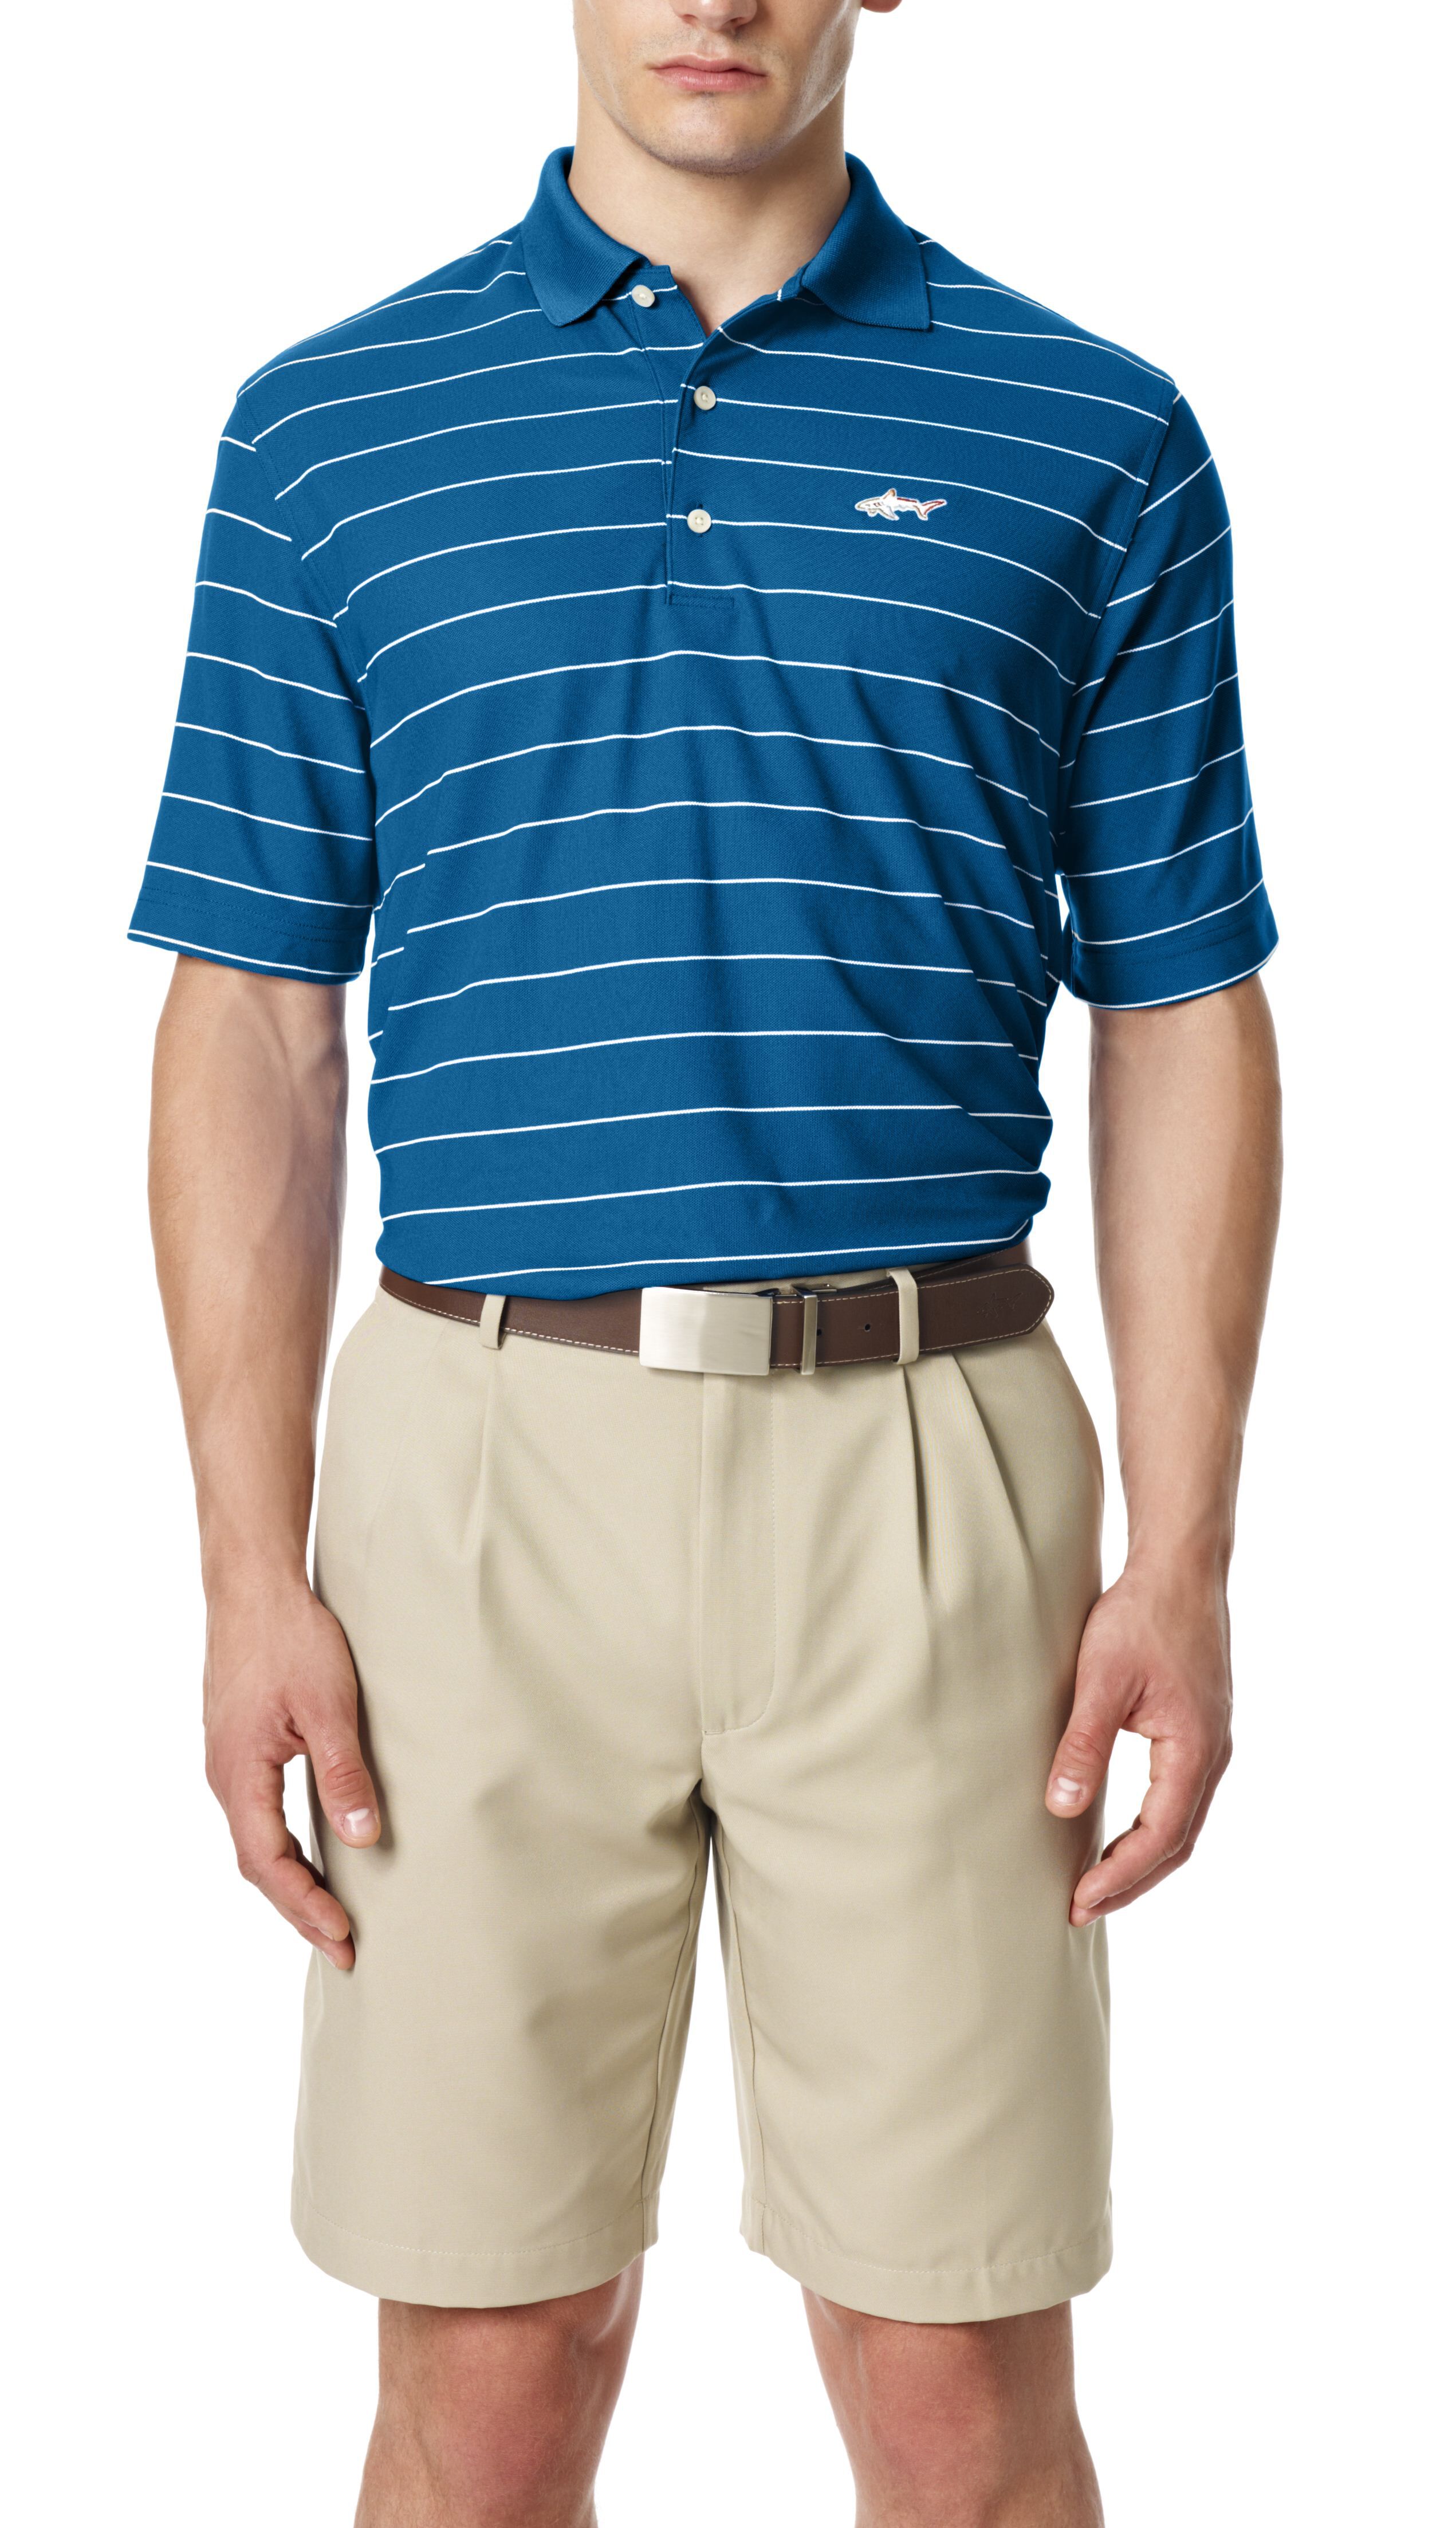 Greg Norman Collection Mens Protek Micro Pique Stripe Polo Shirt